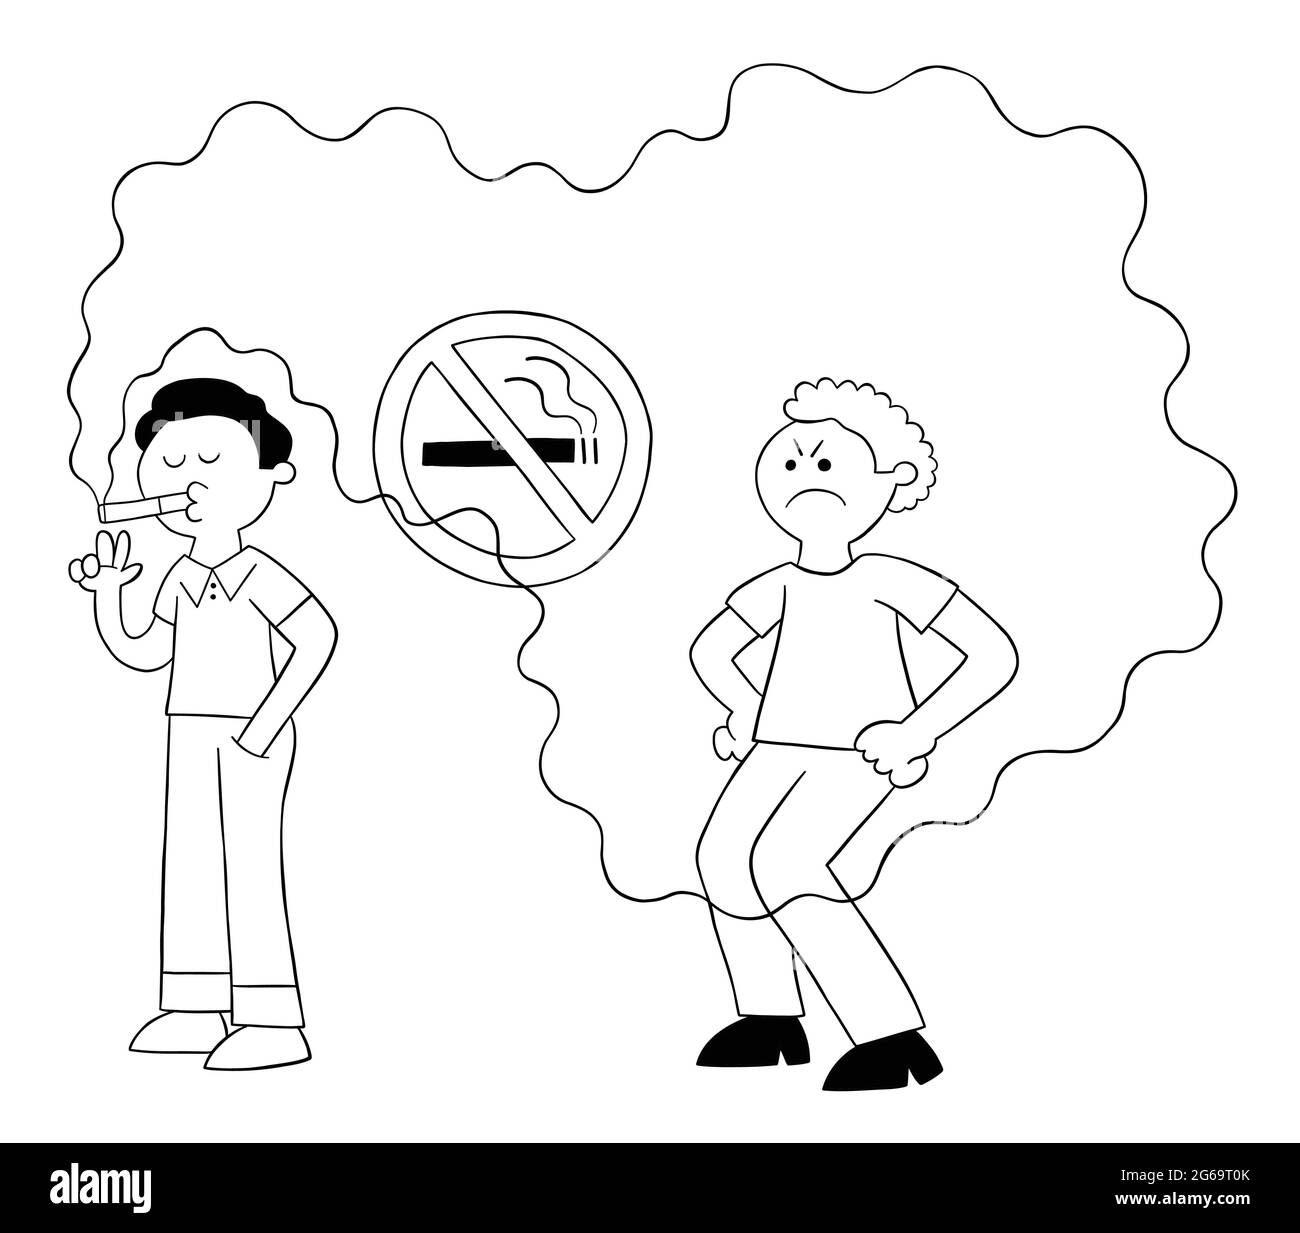 Un homme de dessin animé fume dans un endroit non fumeur et un homme derrière est gêné par la fumée de cigarette, illustration vectorielle. Contour noir et couleur blanche. Illustration de Vecteur